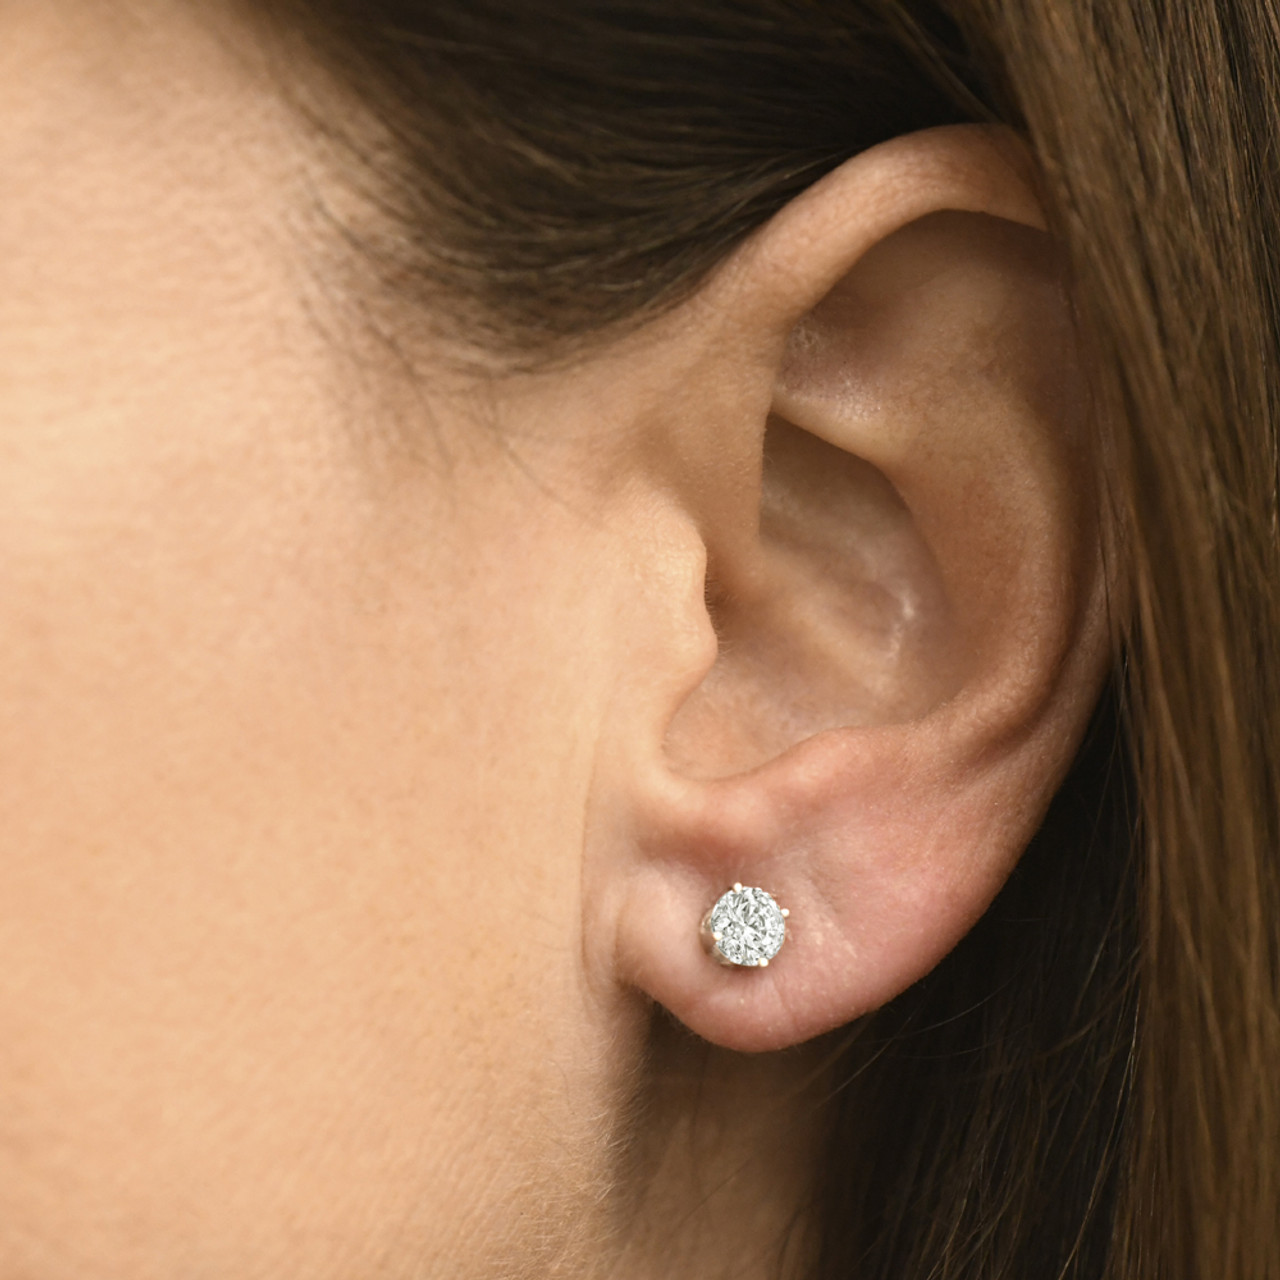 Pompeii3 1/4 Carat Genuine Diamond Stud Earrings